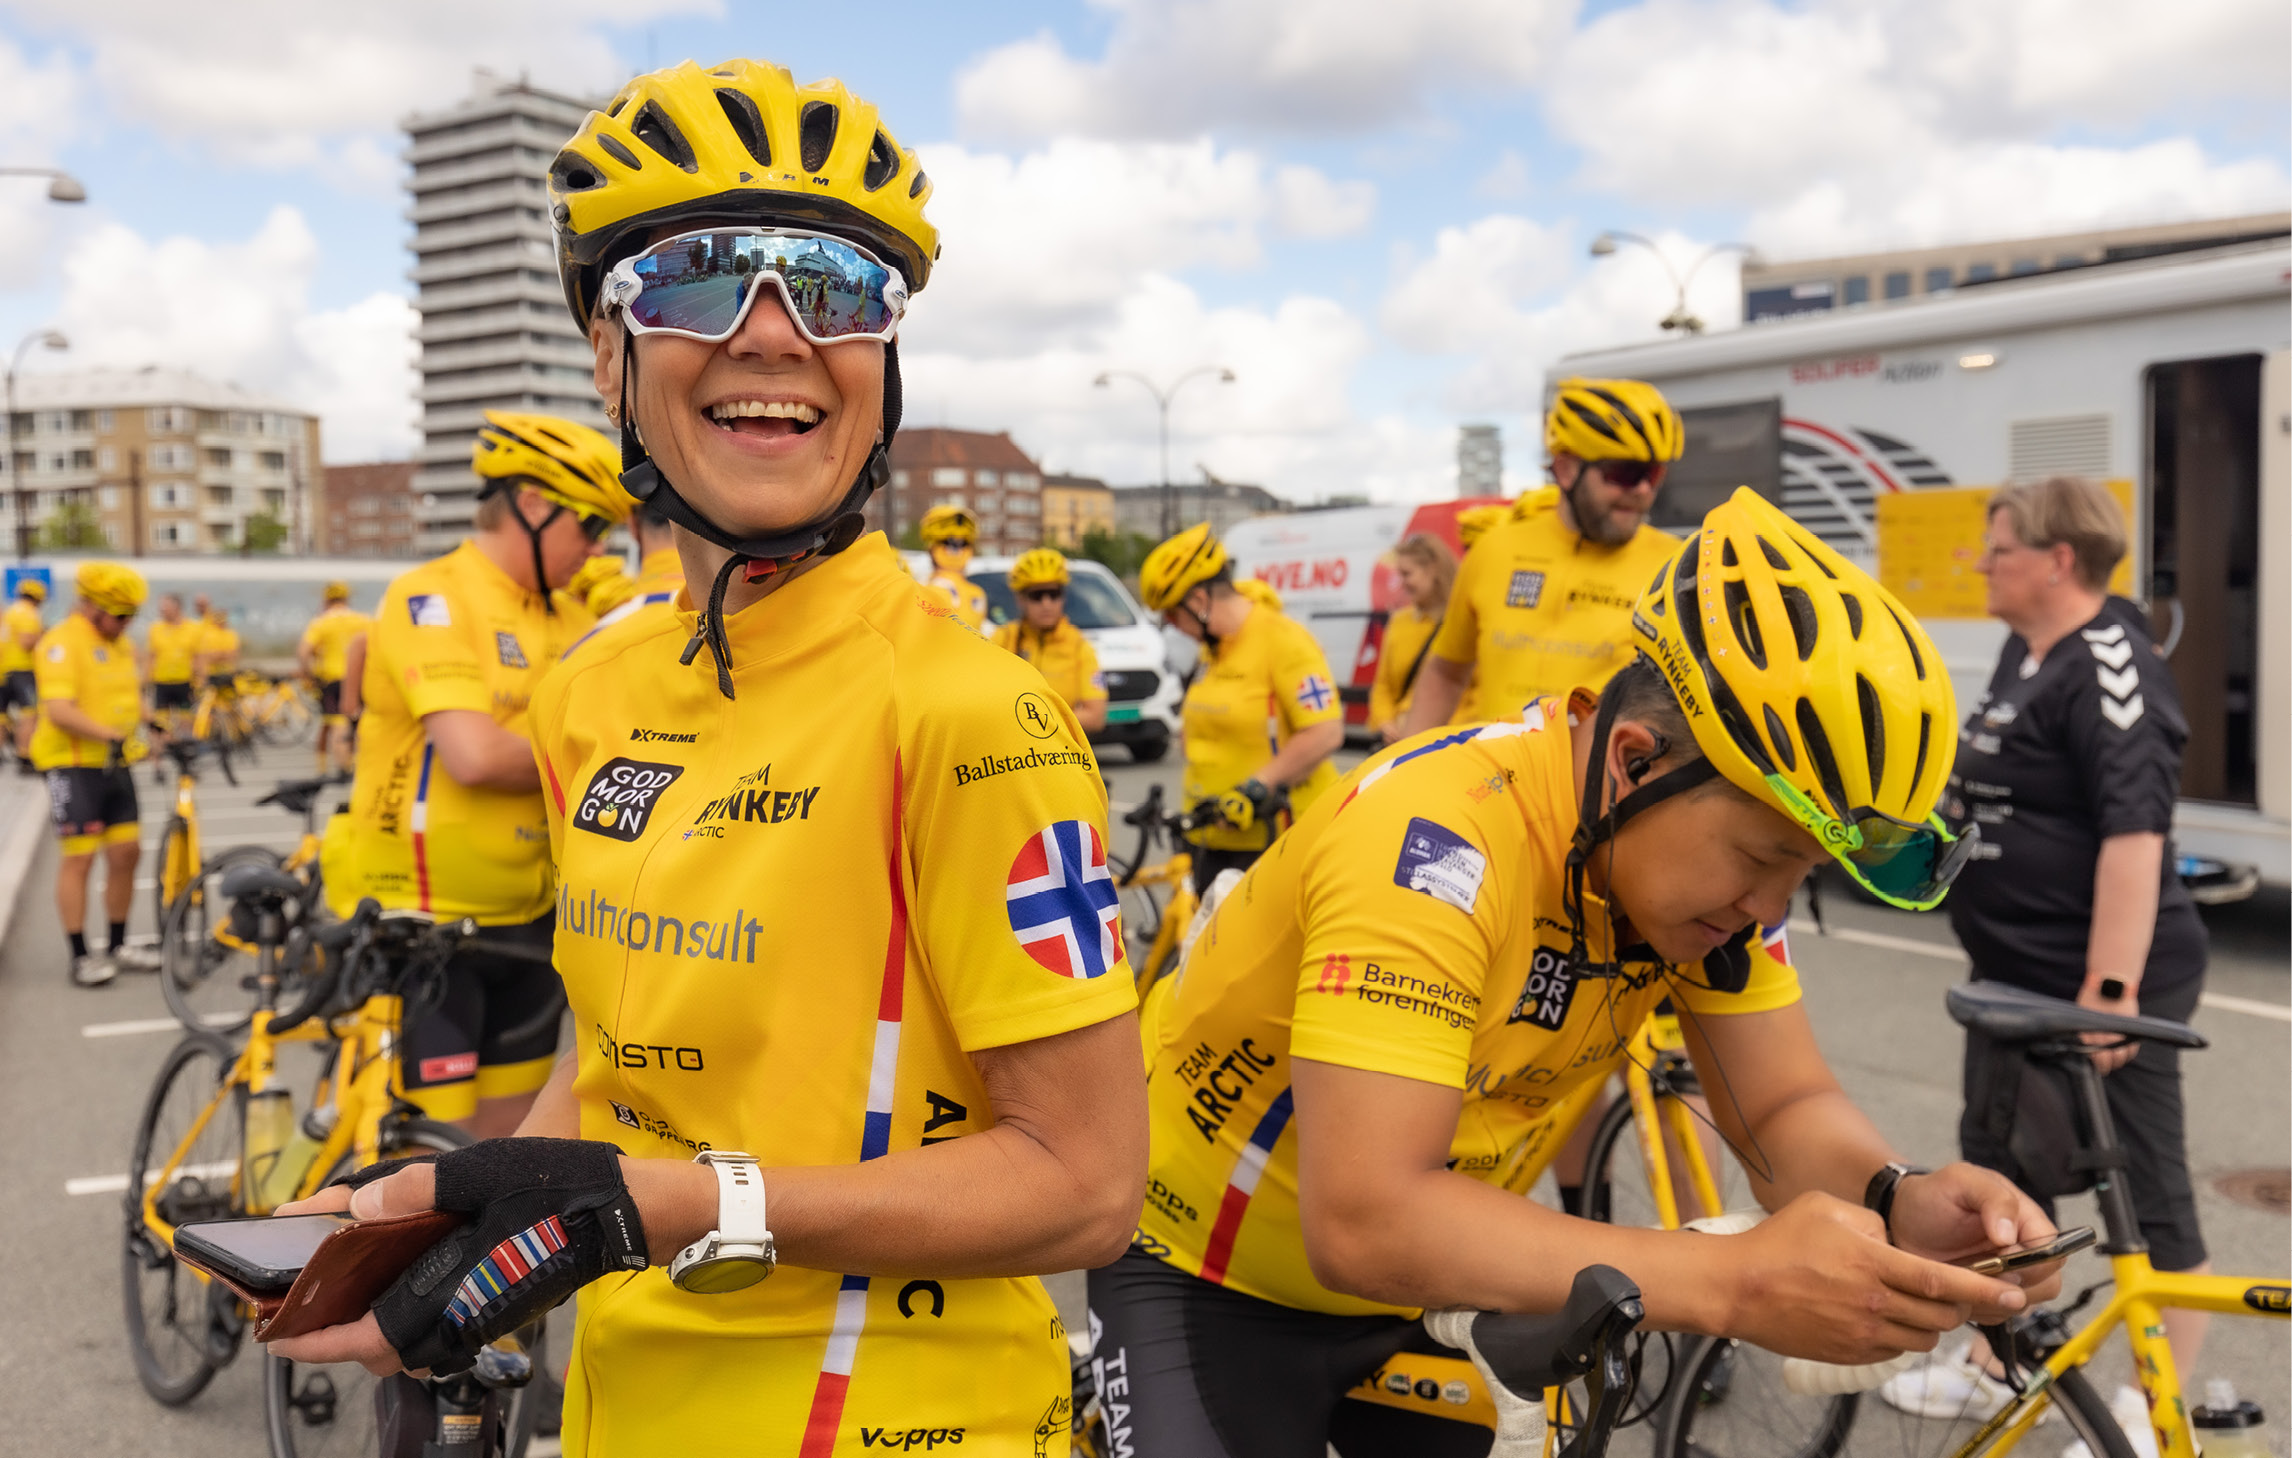 Fahrradfahrer stehen in einer Gruppe zusammen. Sie tragen gelbe Trikots und Helme und die norwegische Flagge auf dem linken Ärmel